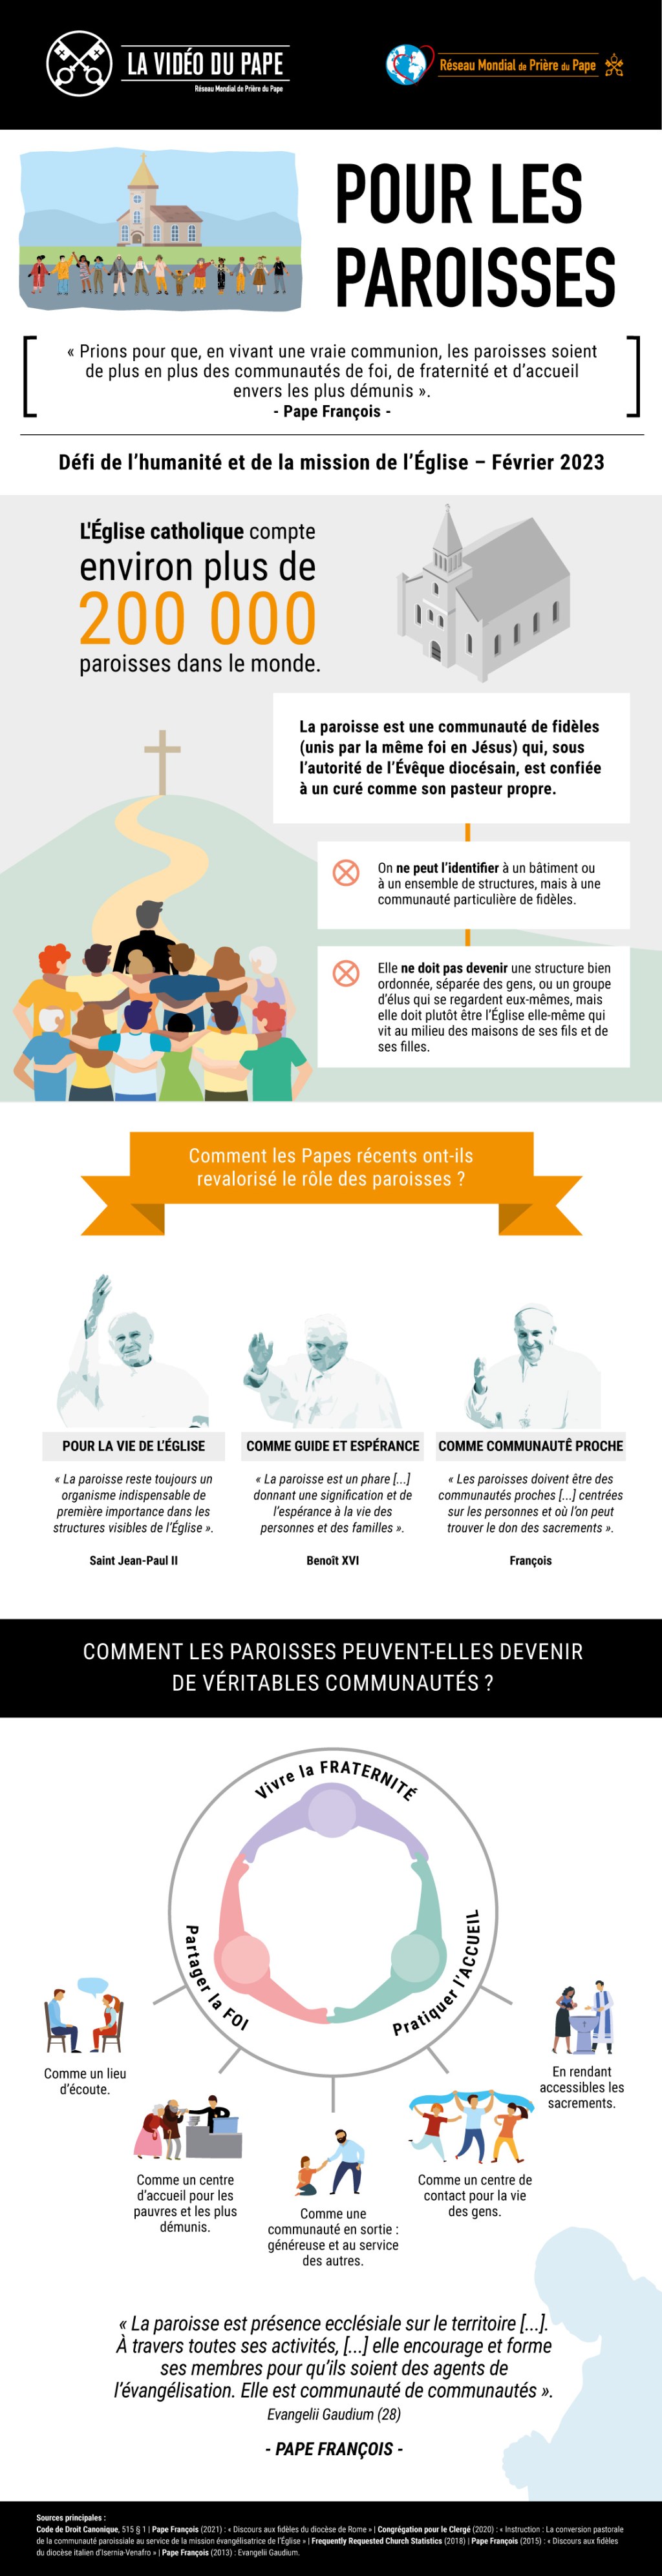 Infografia-TPV-2-2023-FR-Pour-les-paroisses